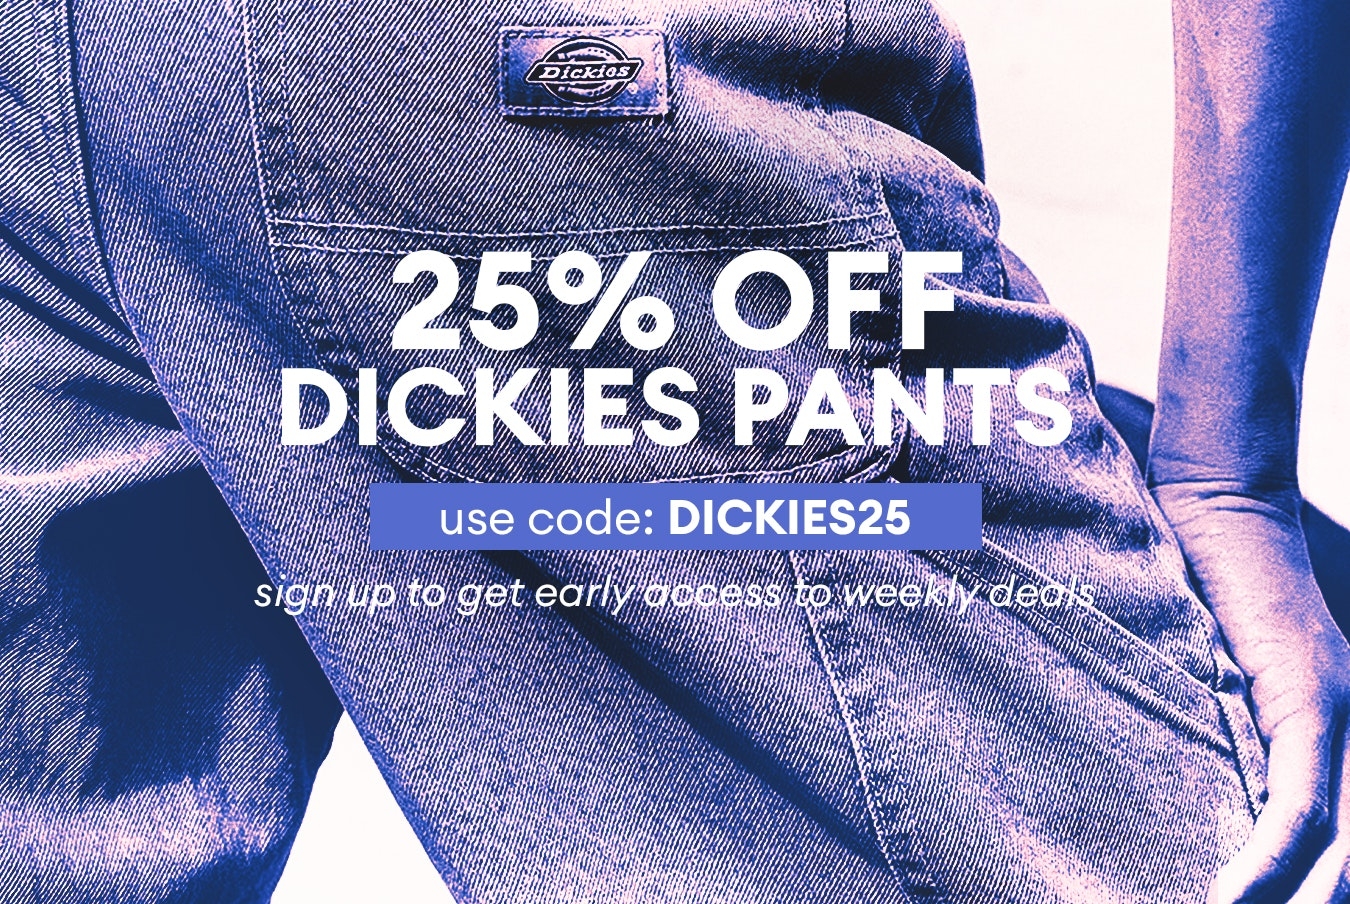 Deal on Dickies pants 25% off!